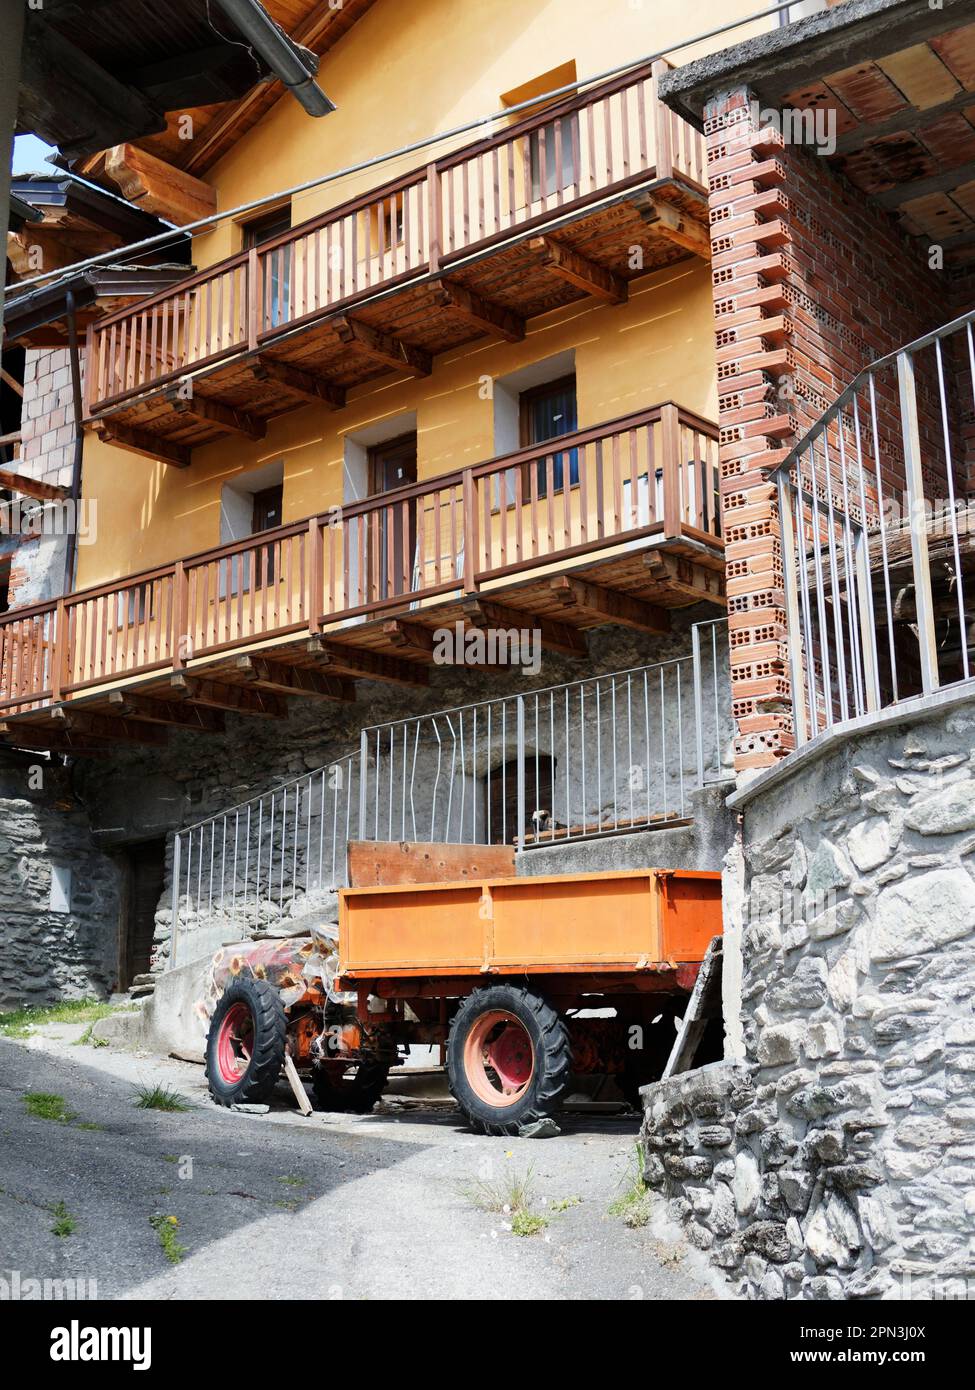 Bâtiment rendu orange avec remorque orange près de nus dans la Vallée d'Aoste, Italie. La structure du bâtiment est en pierre et en brique comme on le voit dans les zones exposées. Banque D'Images